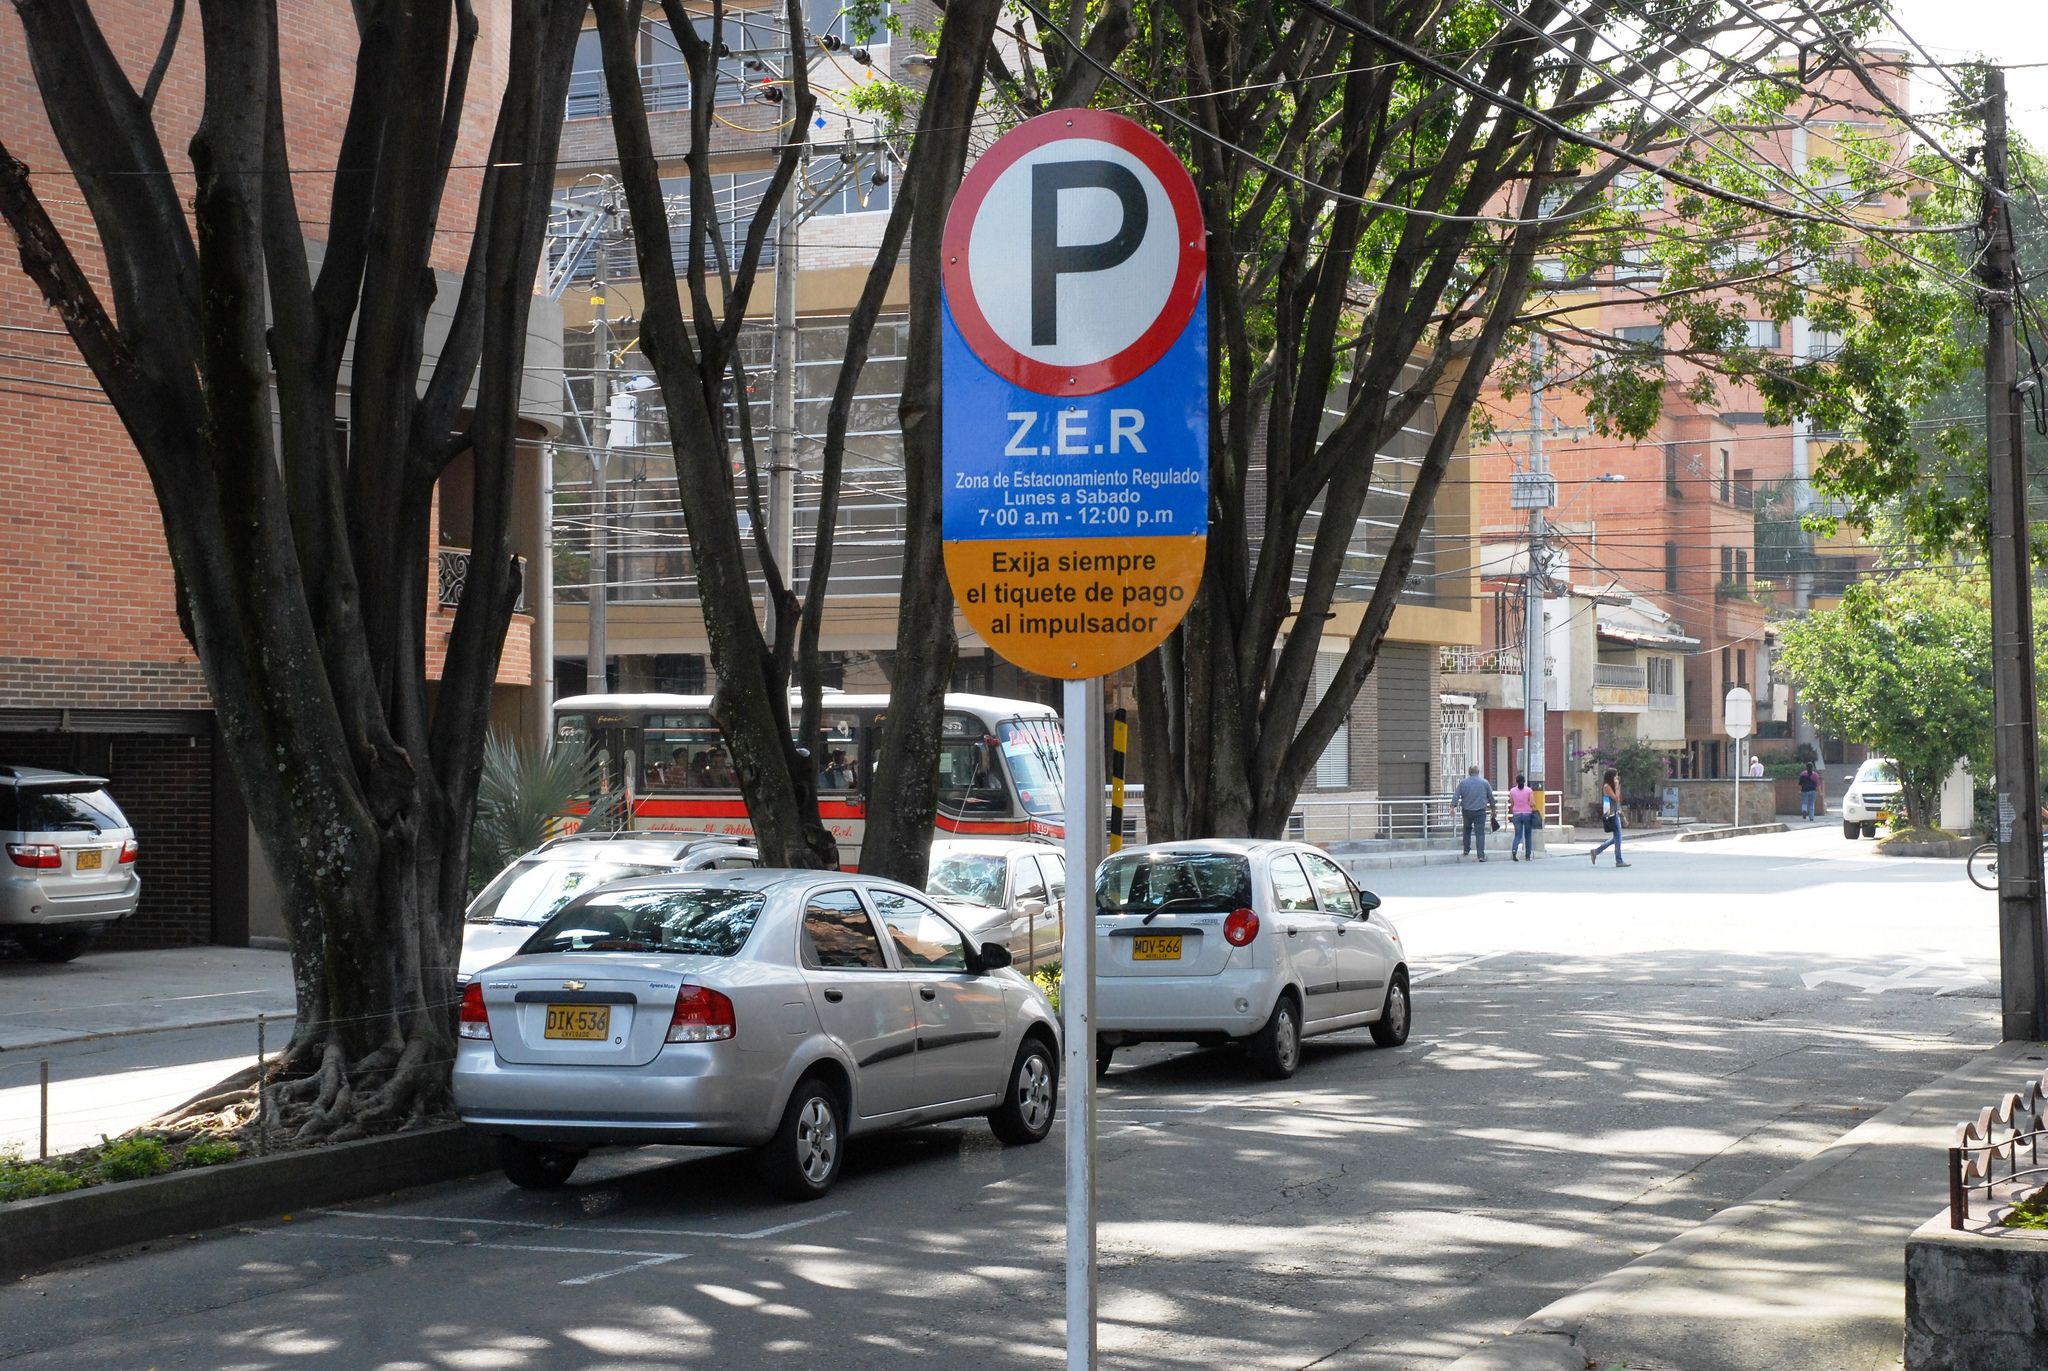 Zonas de Estacionamiento Regulado ZER Sec Movilidad Medellin